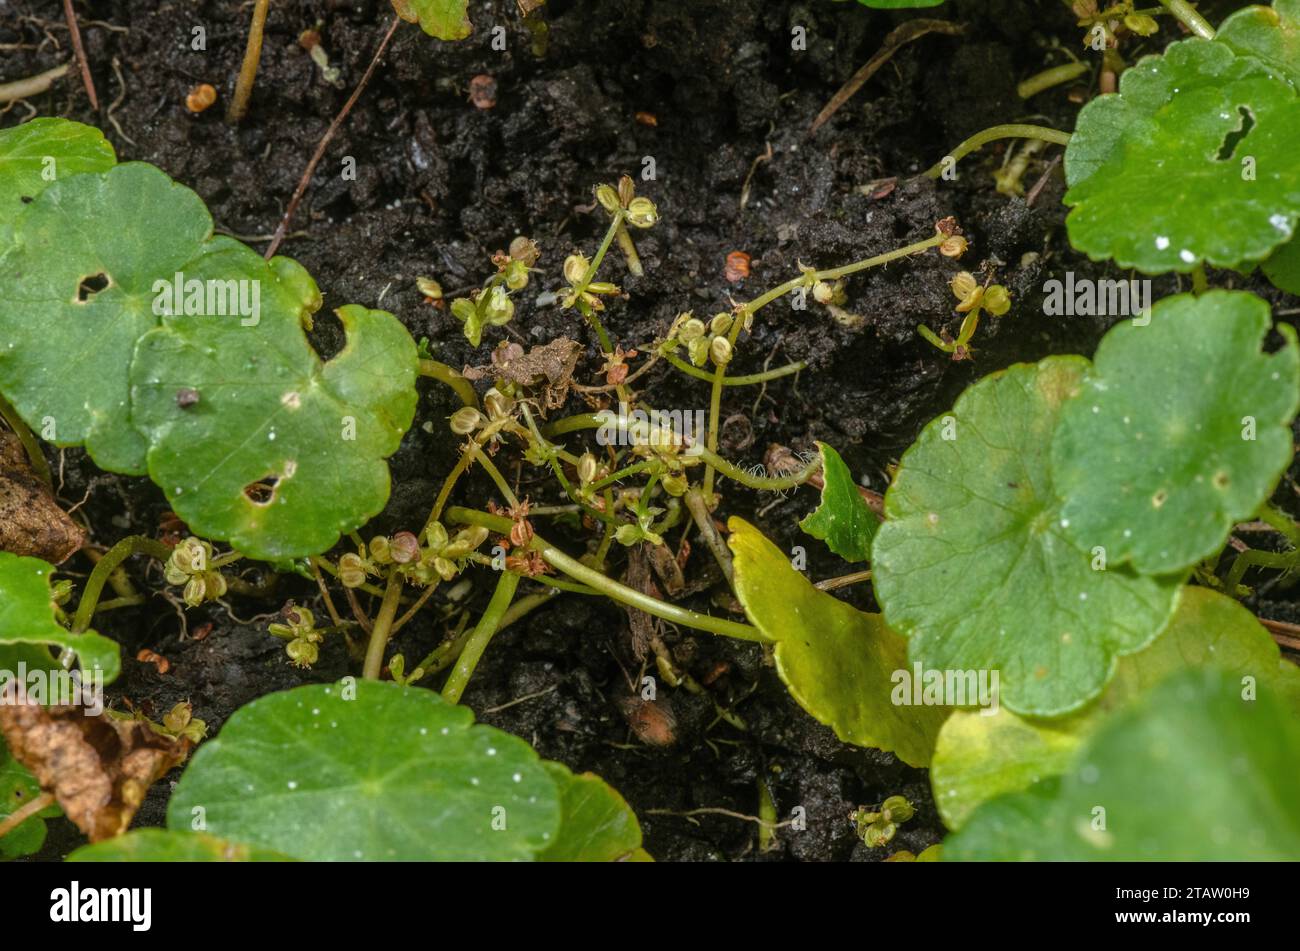 Marsh pennywort, Hydrocotyle vulgaris, in fruit on marshy ground, in autumn. Stock Photo